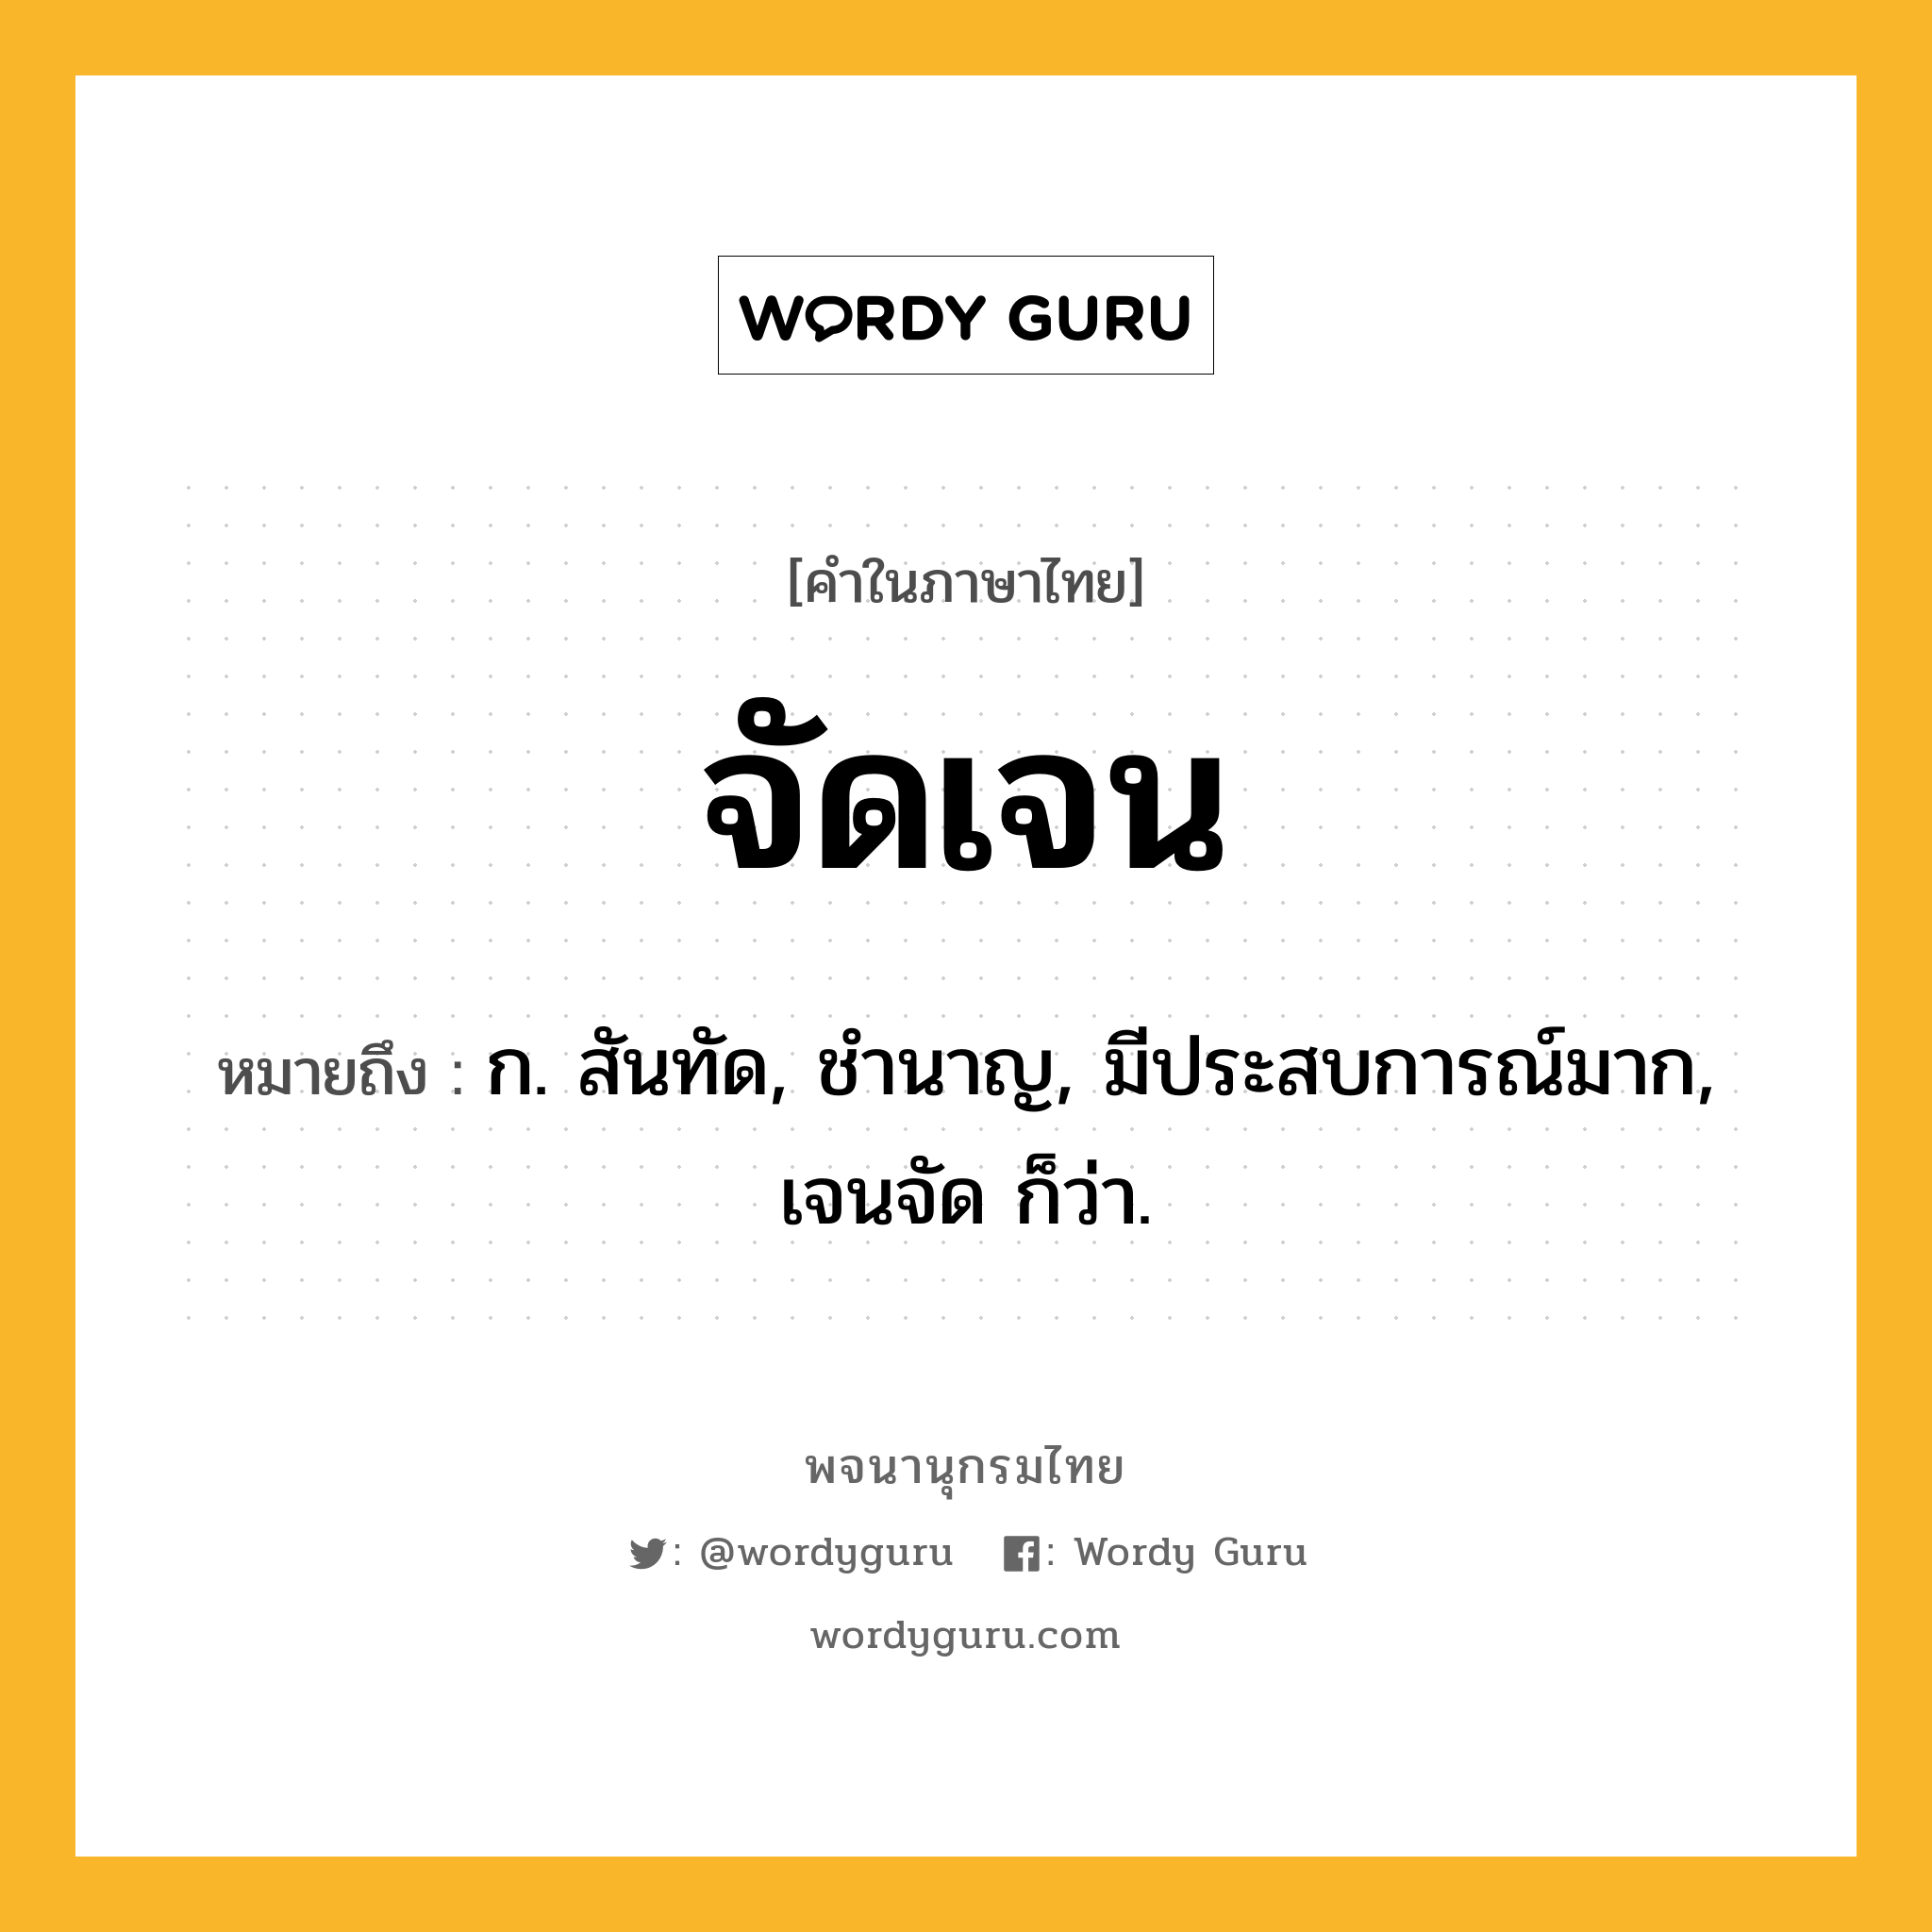 จัดเจน ความหมาย หมายถึงอะไร?, คำในภาษาไทย จัดเจน หมายถึง ก. สันทัด, ชํานาญ, มีประสบการณ์มาก, เจนจัด ก็ว่า.